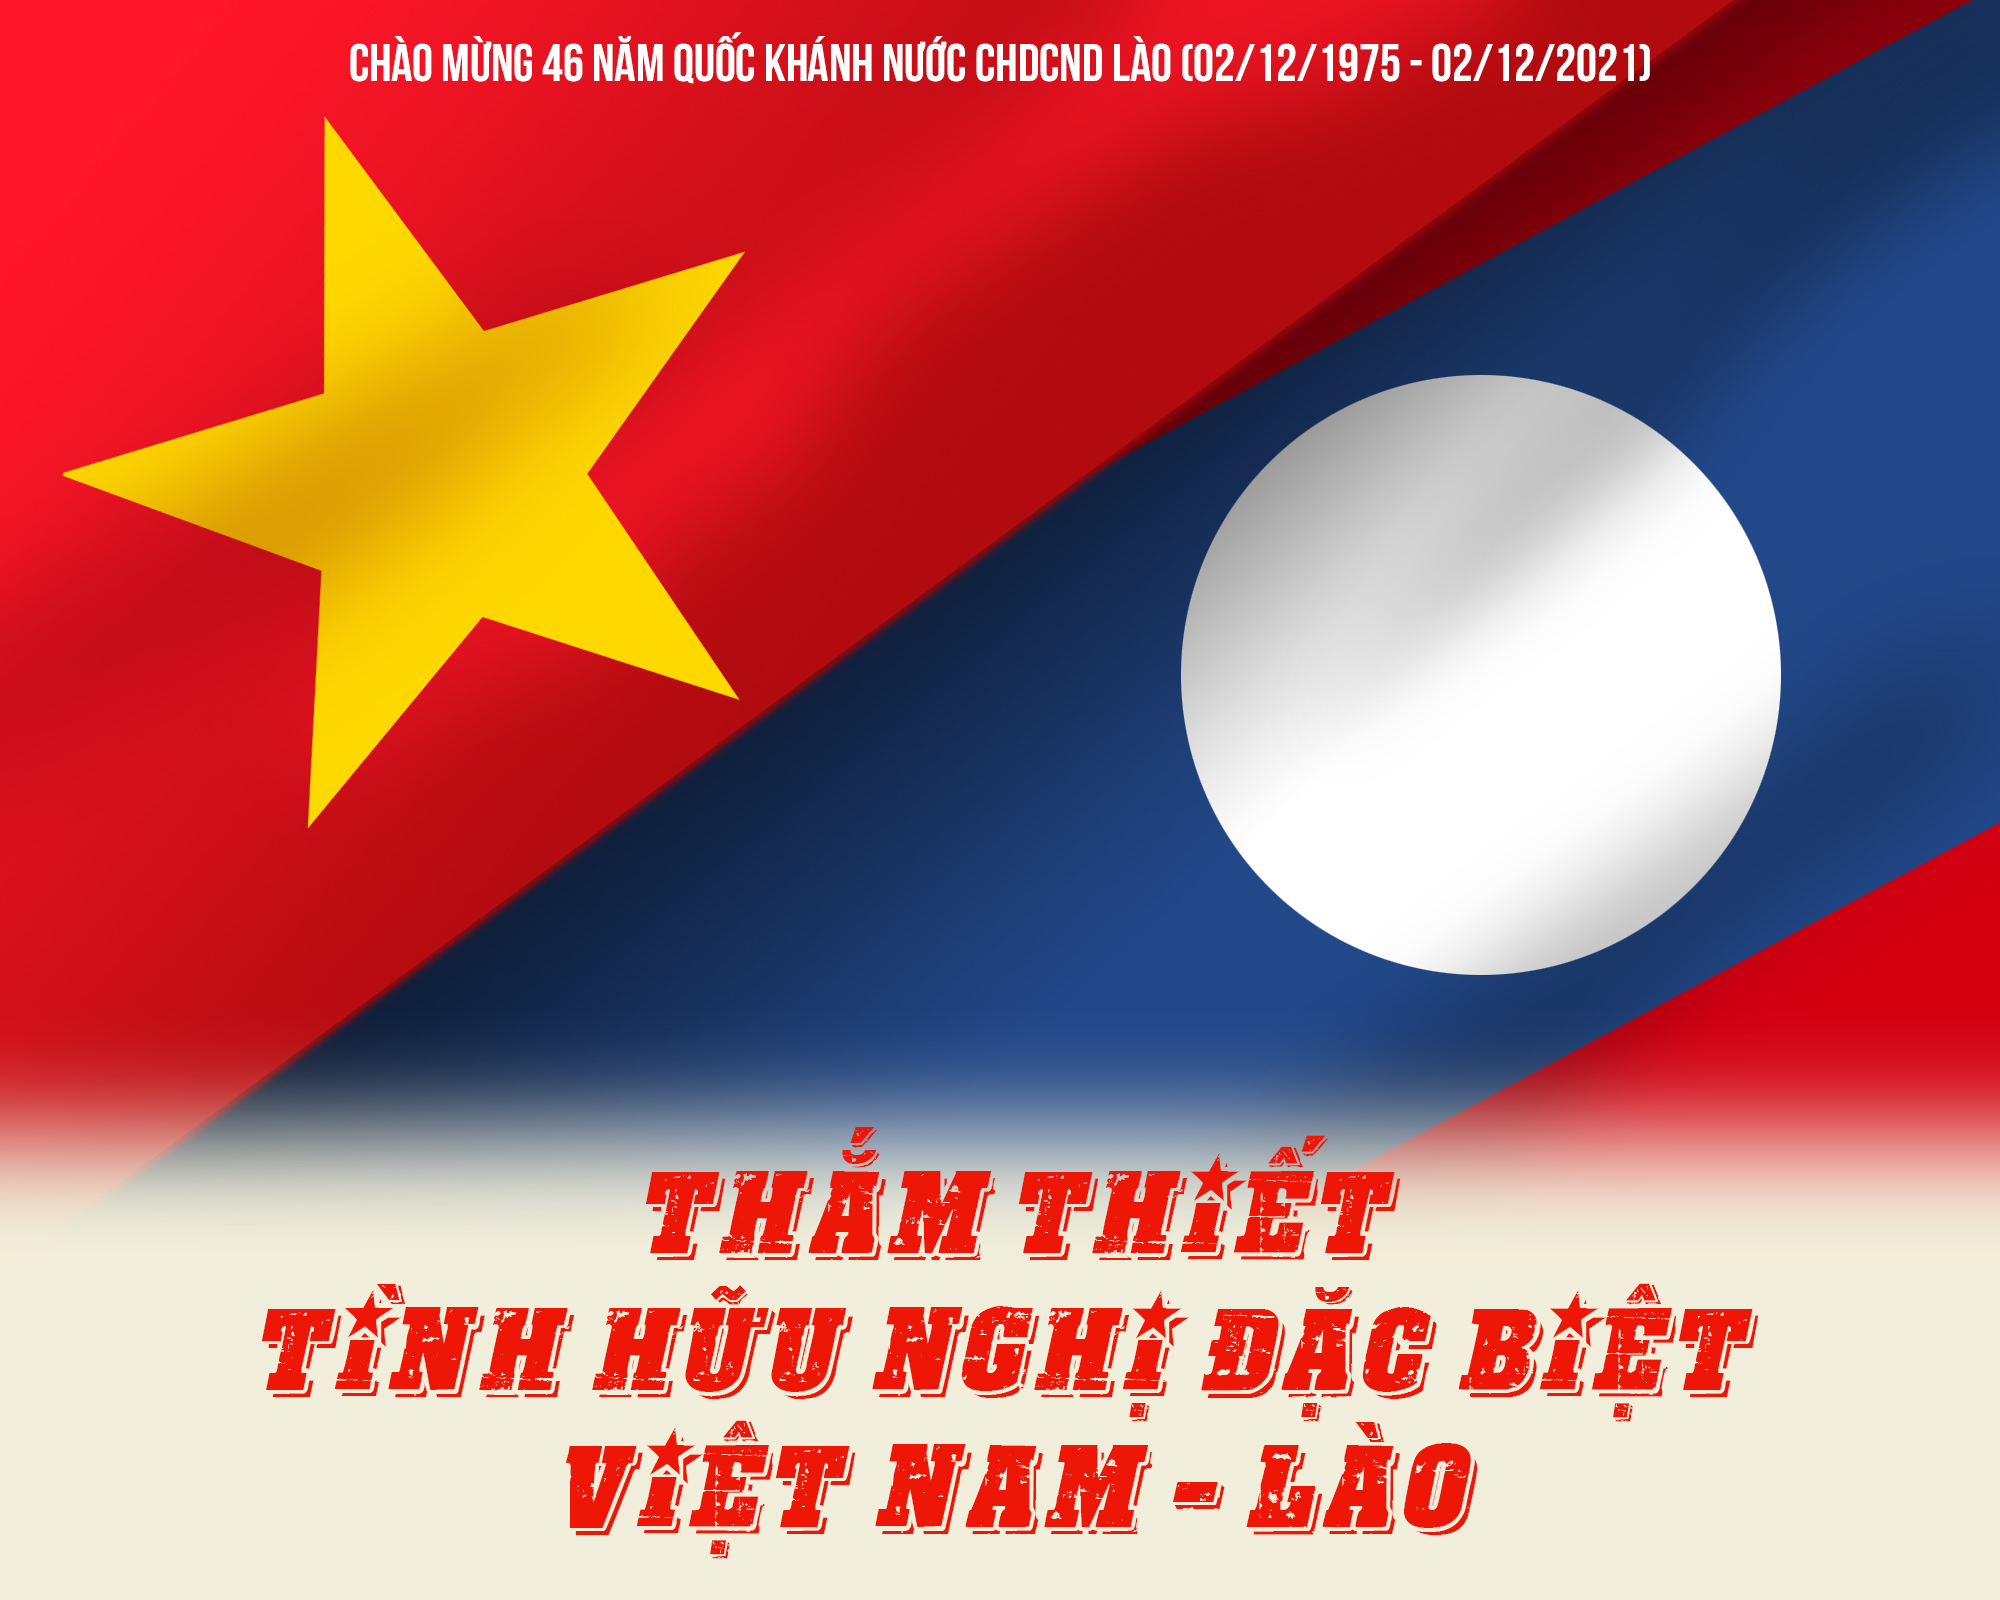 Tình bạn Việt-Lào luôn là một chủ đề gợi nhắc đáng để bàn tán và tôn vinh, hãy cùng xem hình ảnh để cảm nhận được tình cảm và sự đoàn kết giữa hai dân tộc. Những hình ảnh đó cũng gợi mở về hợp tác, phát triển chung và tương lai tươi sáng của quan hệ giữa hai nước.